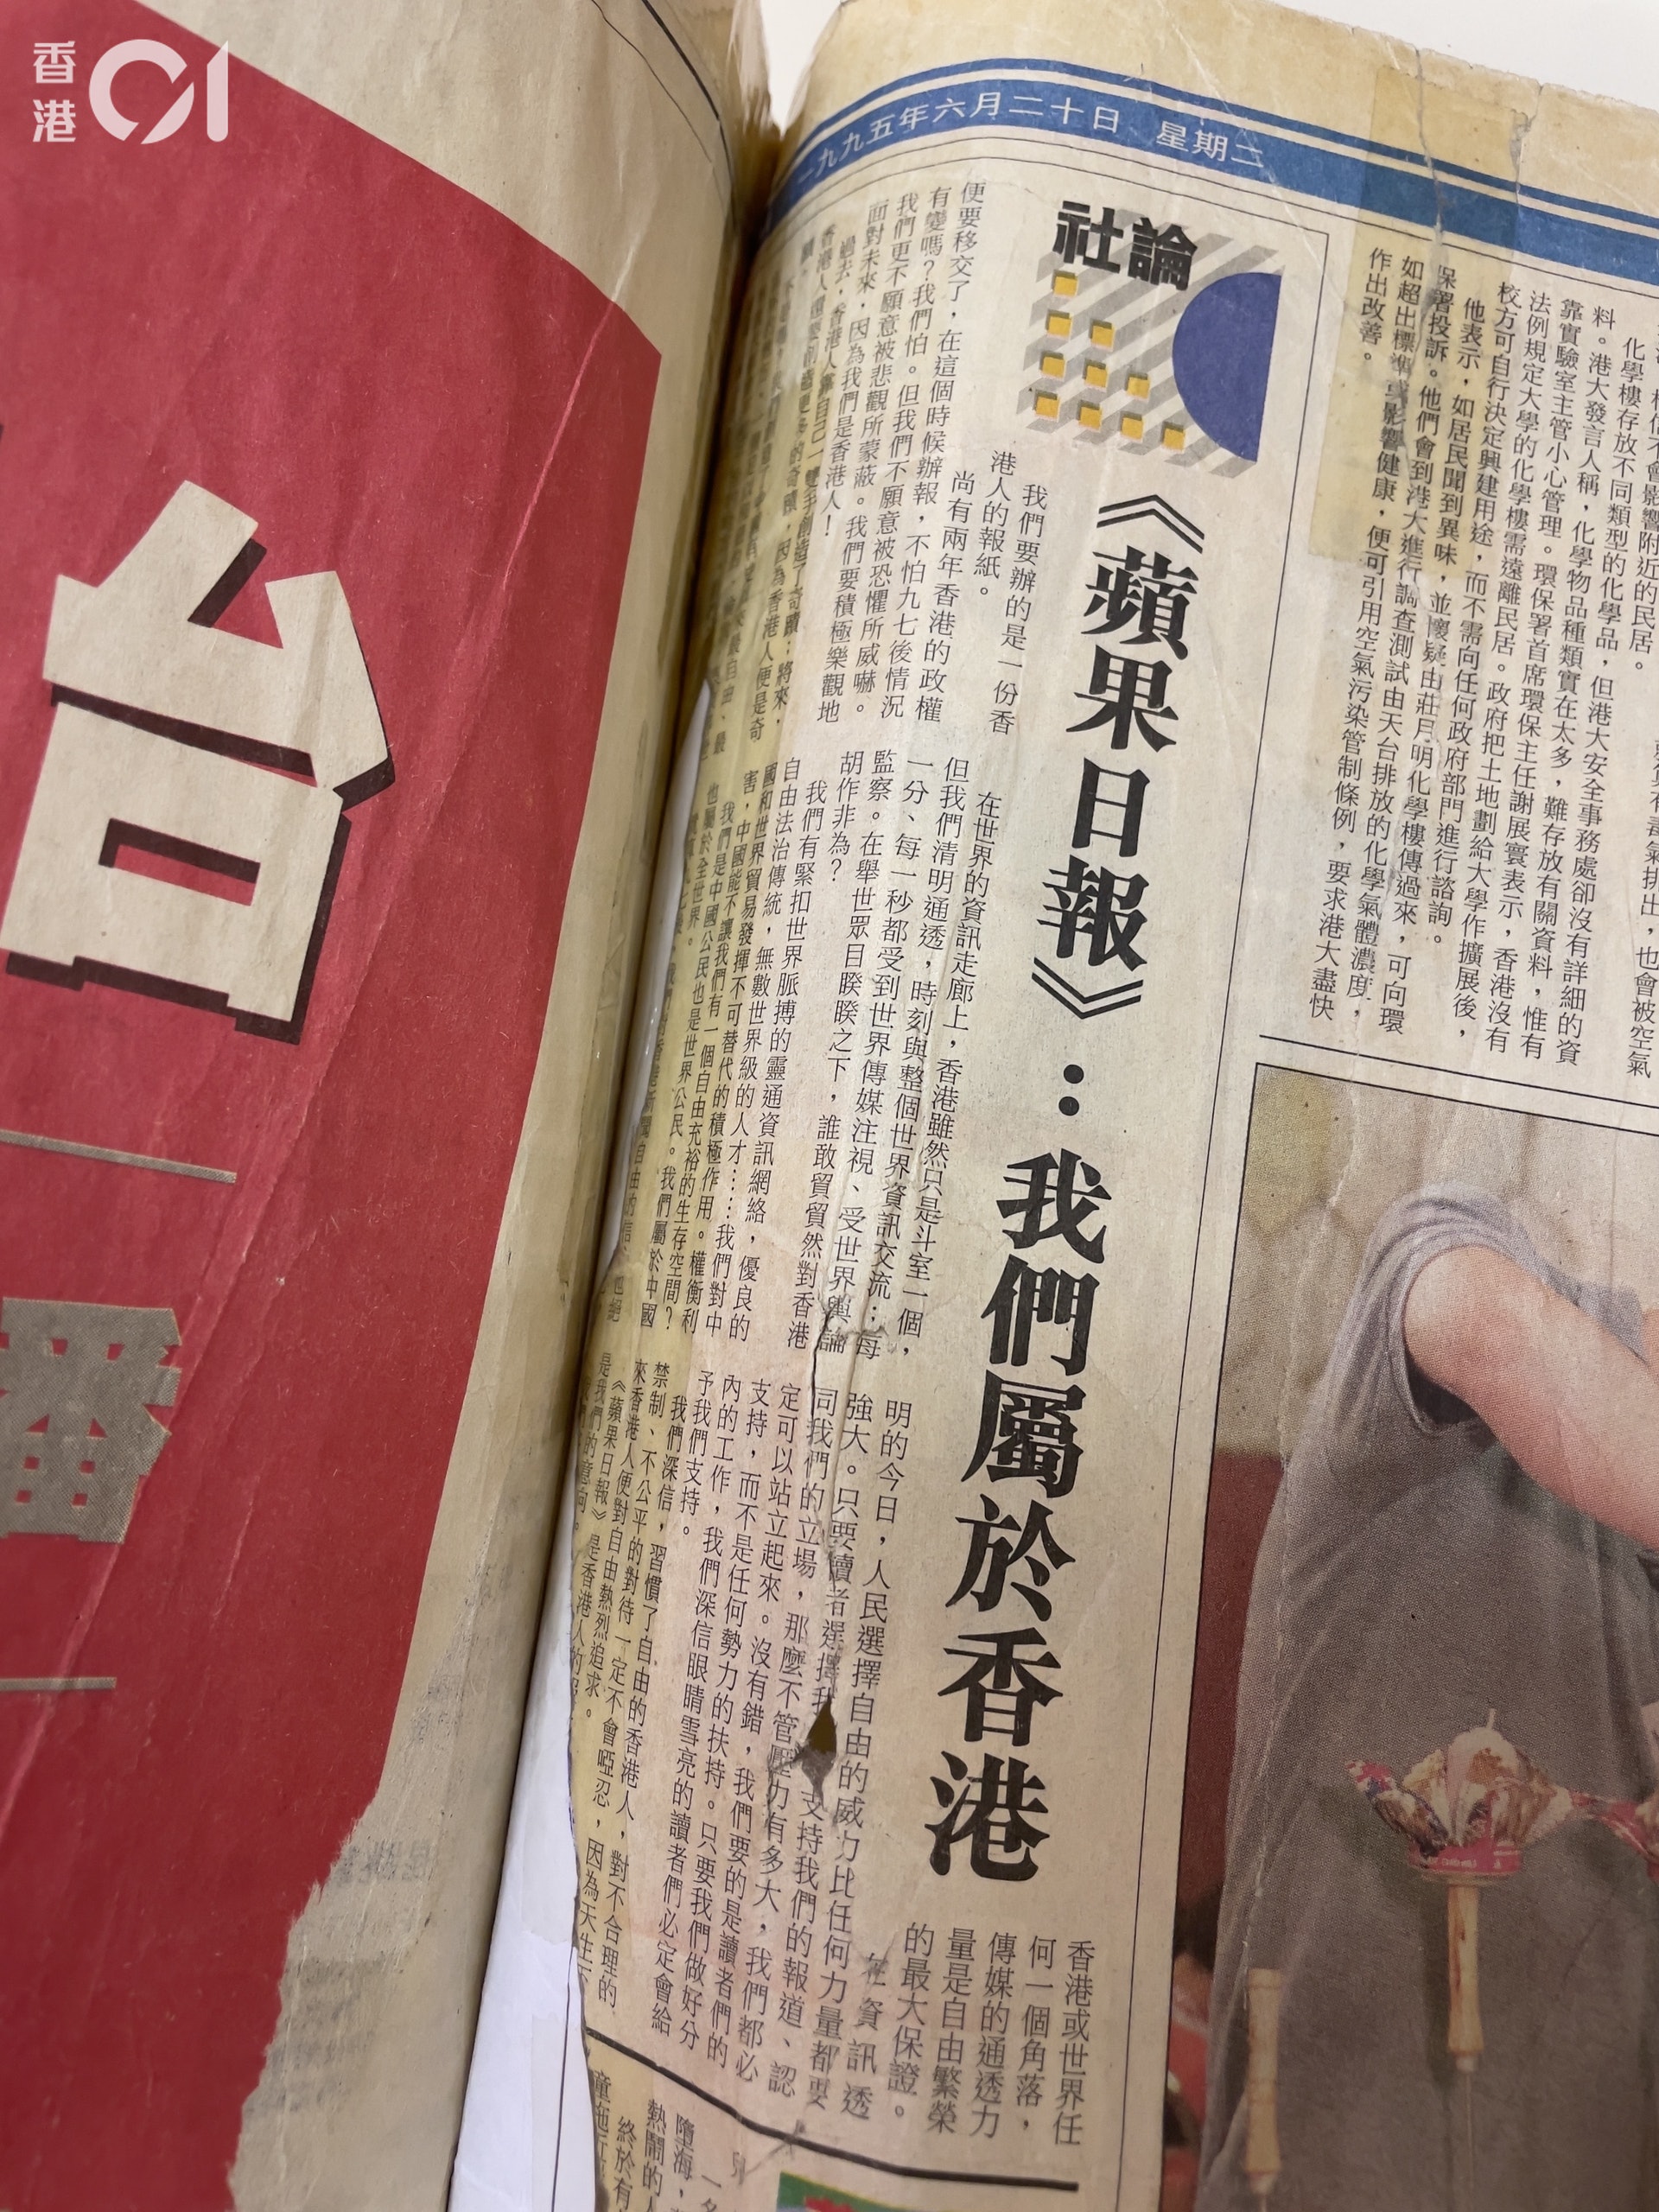 1995年6月20日創刊日，《蘋果日報》在當天的社論曾表明要辦一份「香港人的報紙」，又指尚有兩年便要移交政權，雖然害怕1997年後情況有變，「但我們不願意被恐懼所威嚇」。（盧翊銘攝）